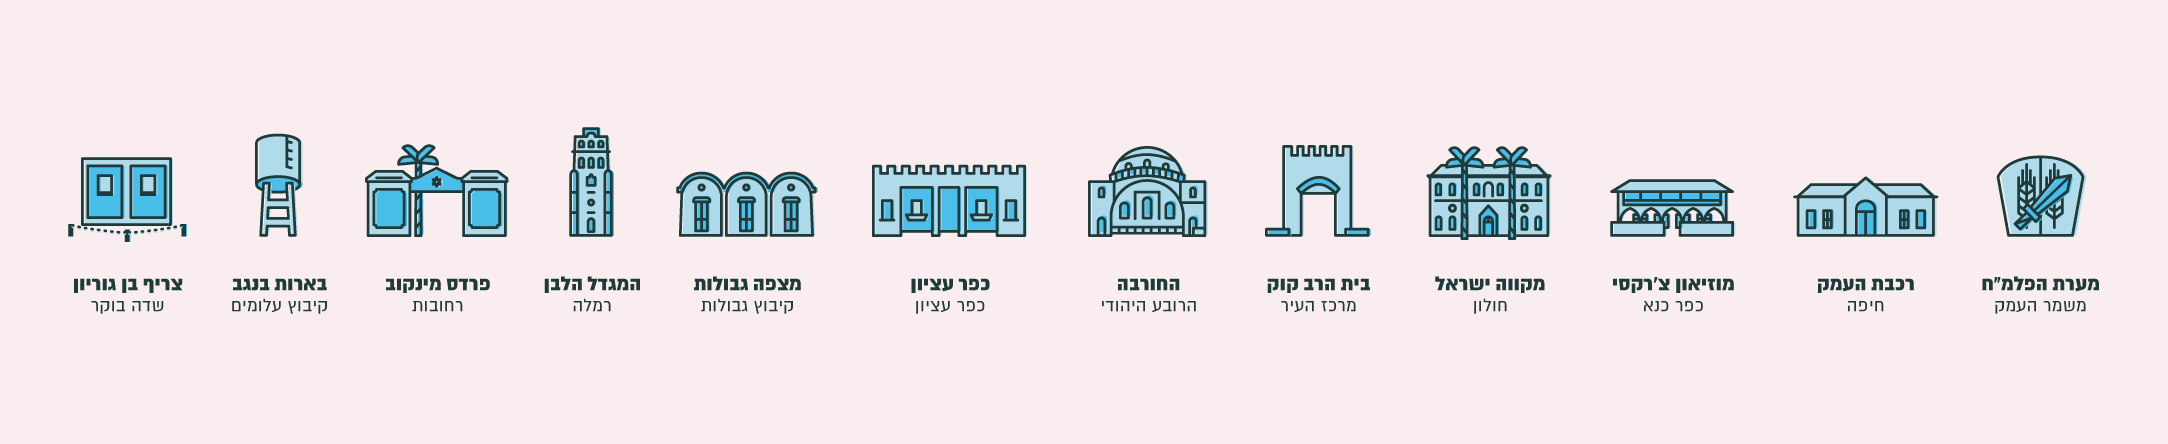 עיצובים גרפיים עבור המועצה לשימור אתרי מורשת בישראל, סטודיו GOOD